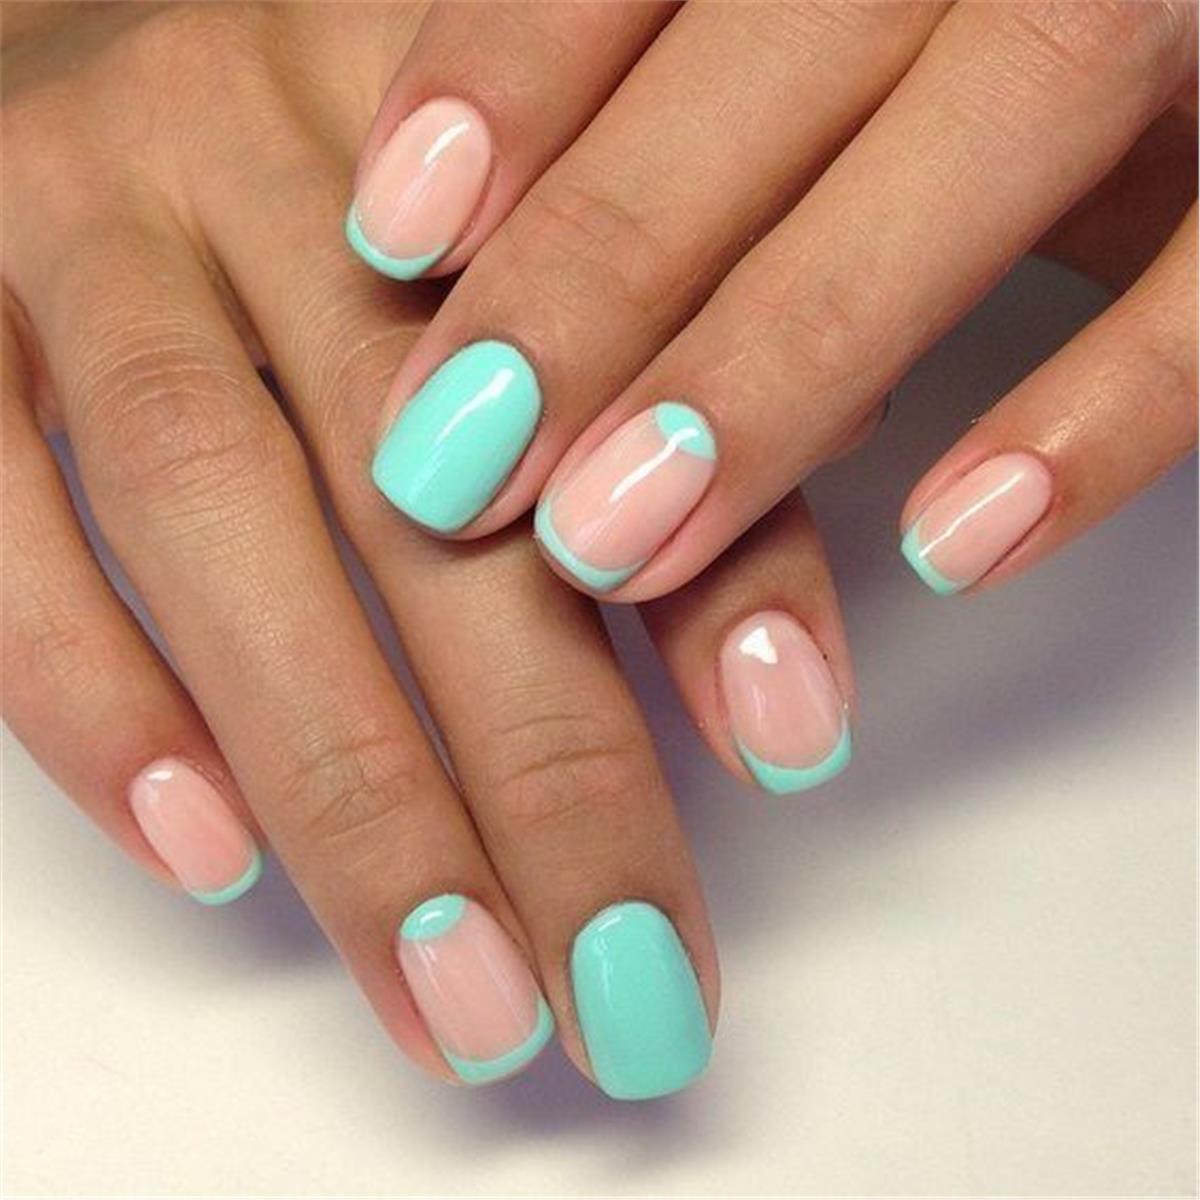 summer-nails